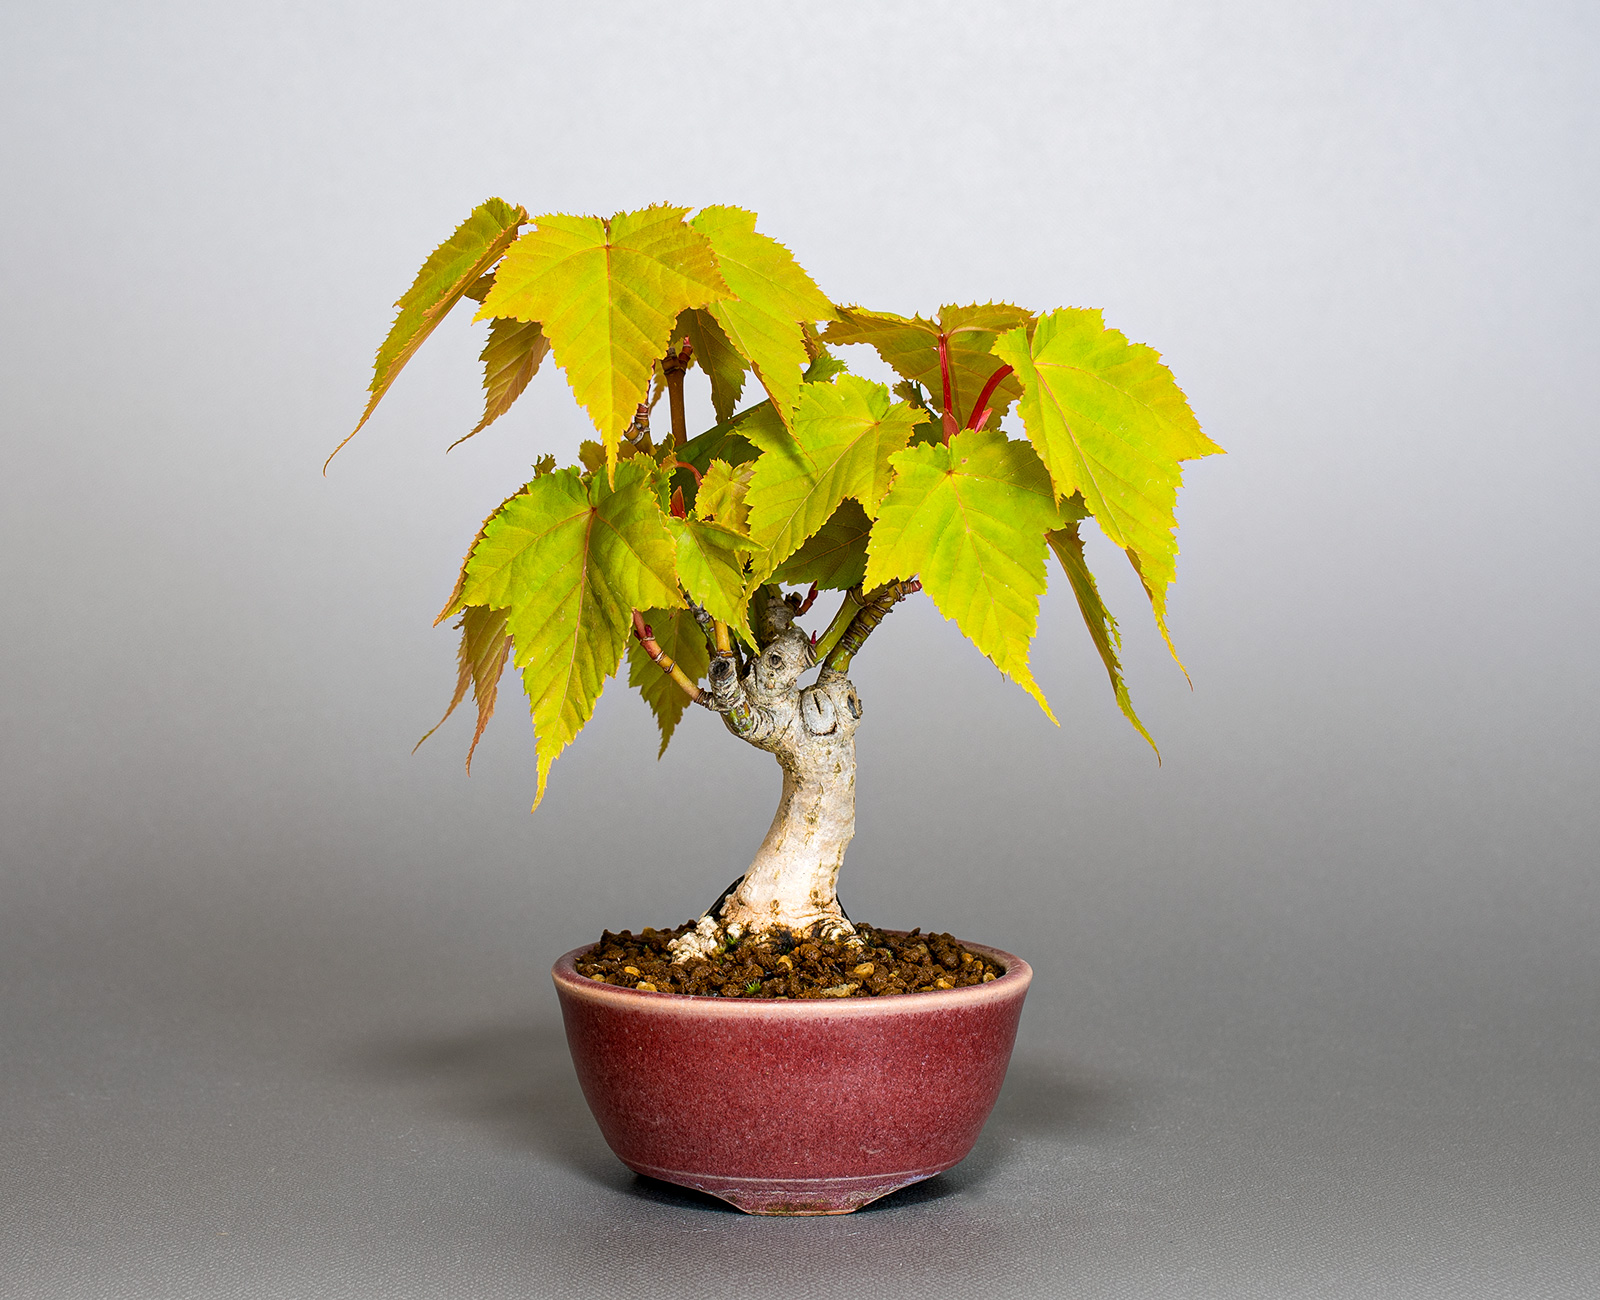 ウリカエデ-U2（うりかえで・瓜楓）雑木盆栽の販売と育て方・作り方・Acer crataegifolium bonsai